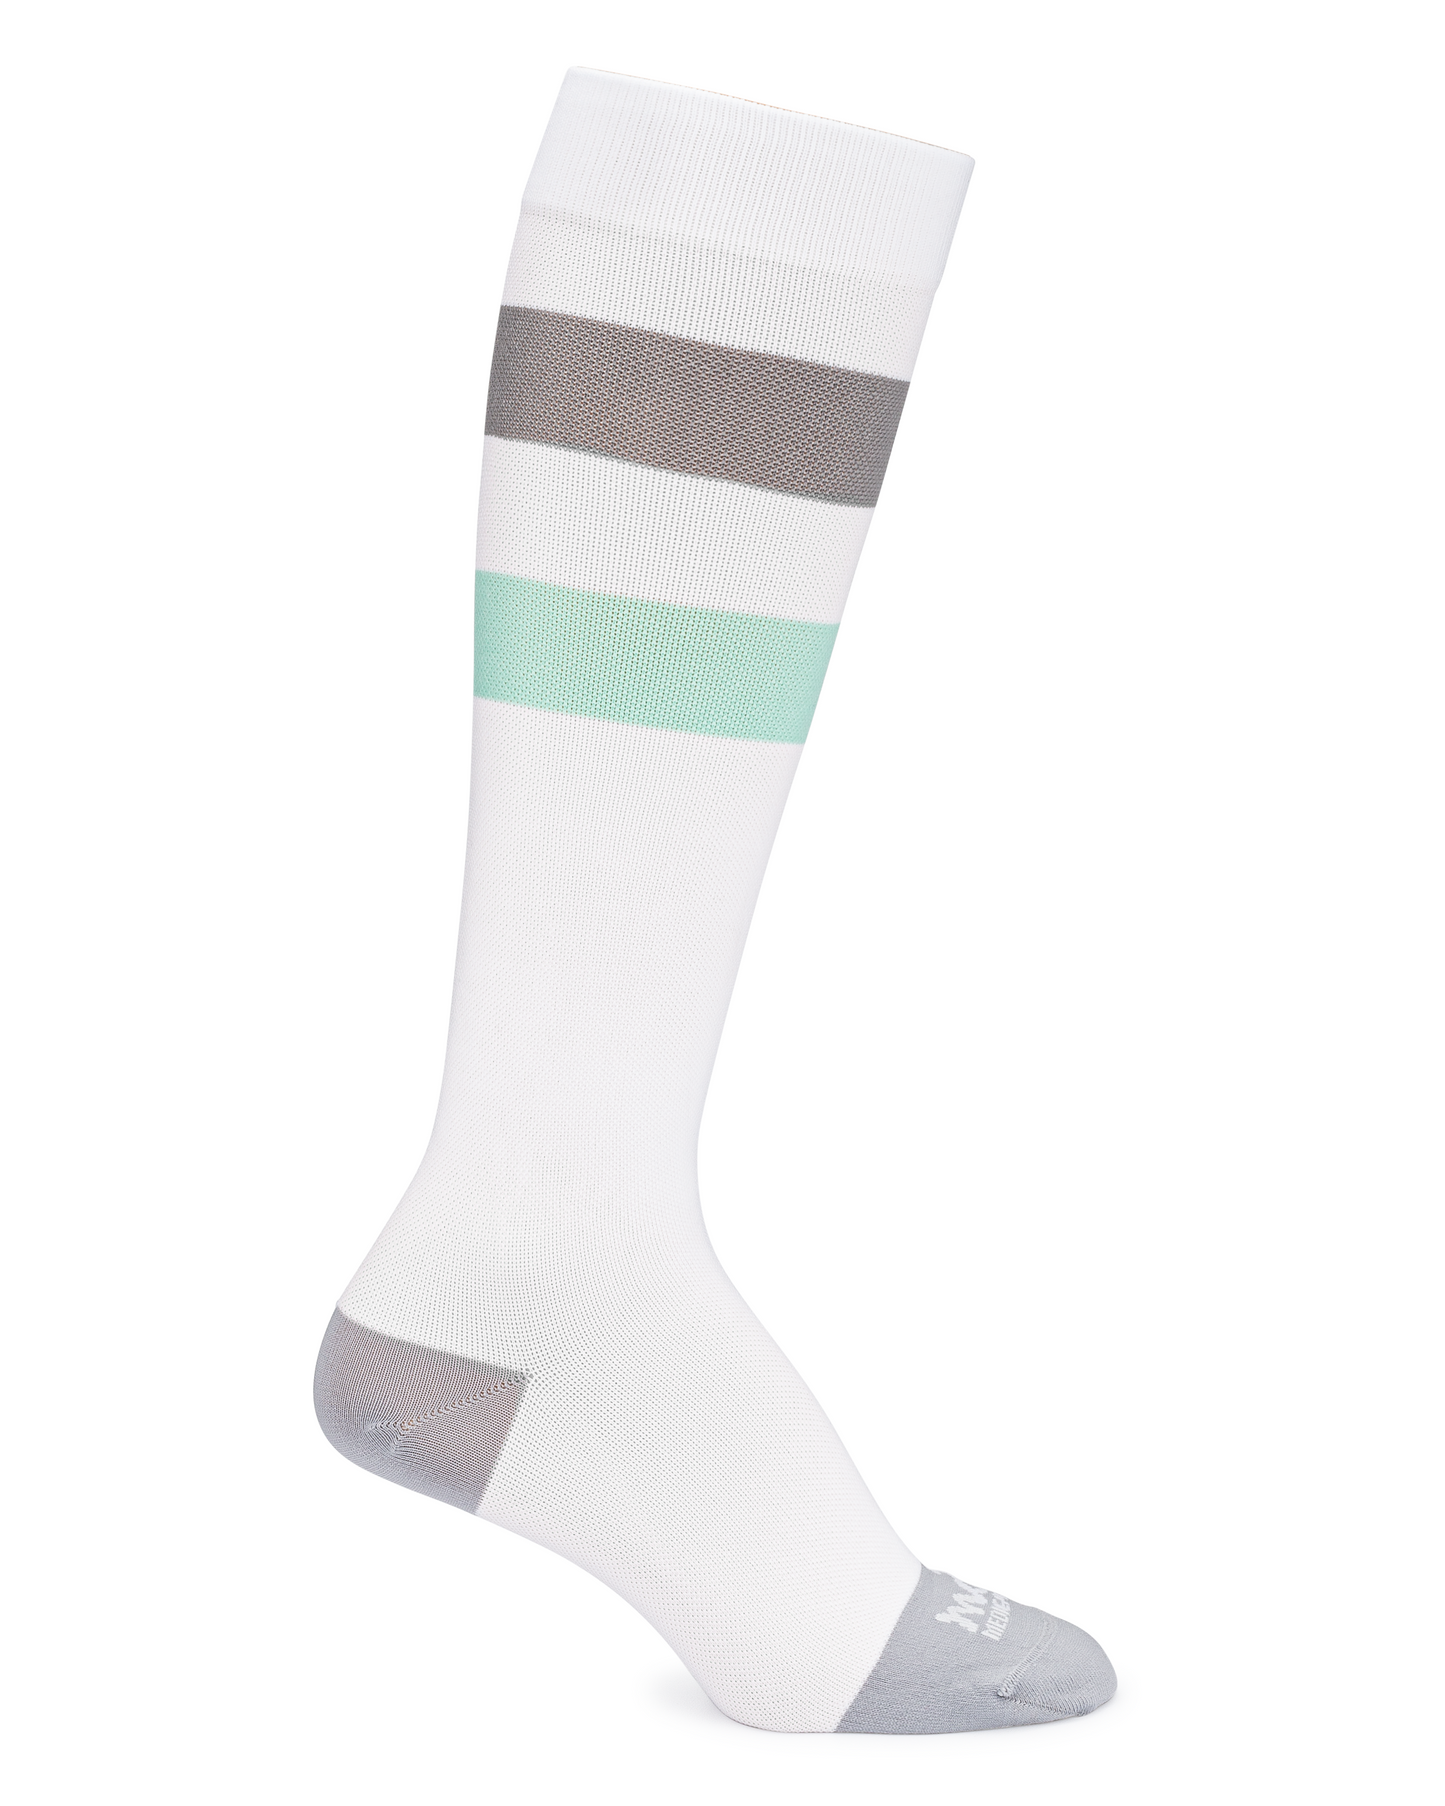 
                  
                    Compression Socks - Teal Stripes
                  
                